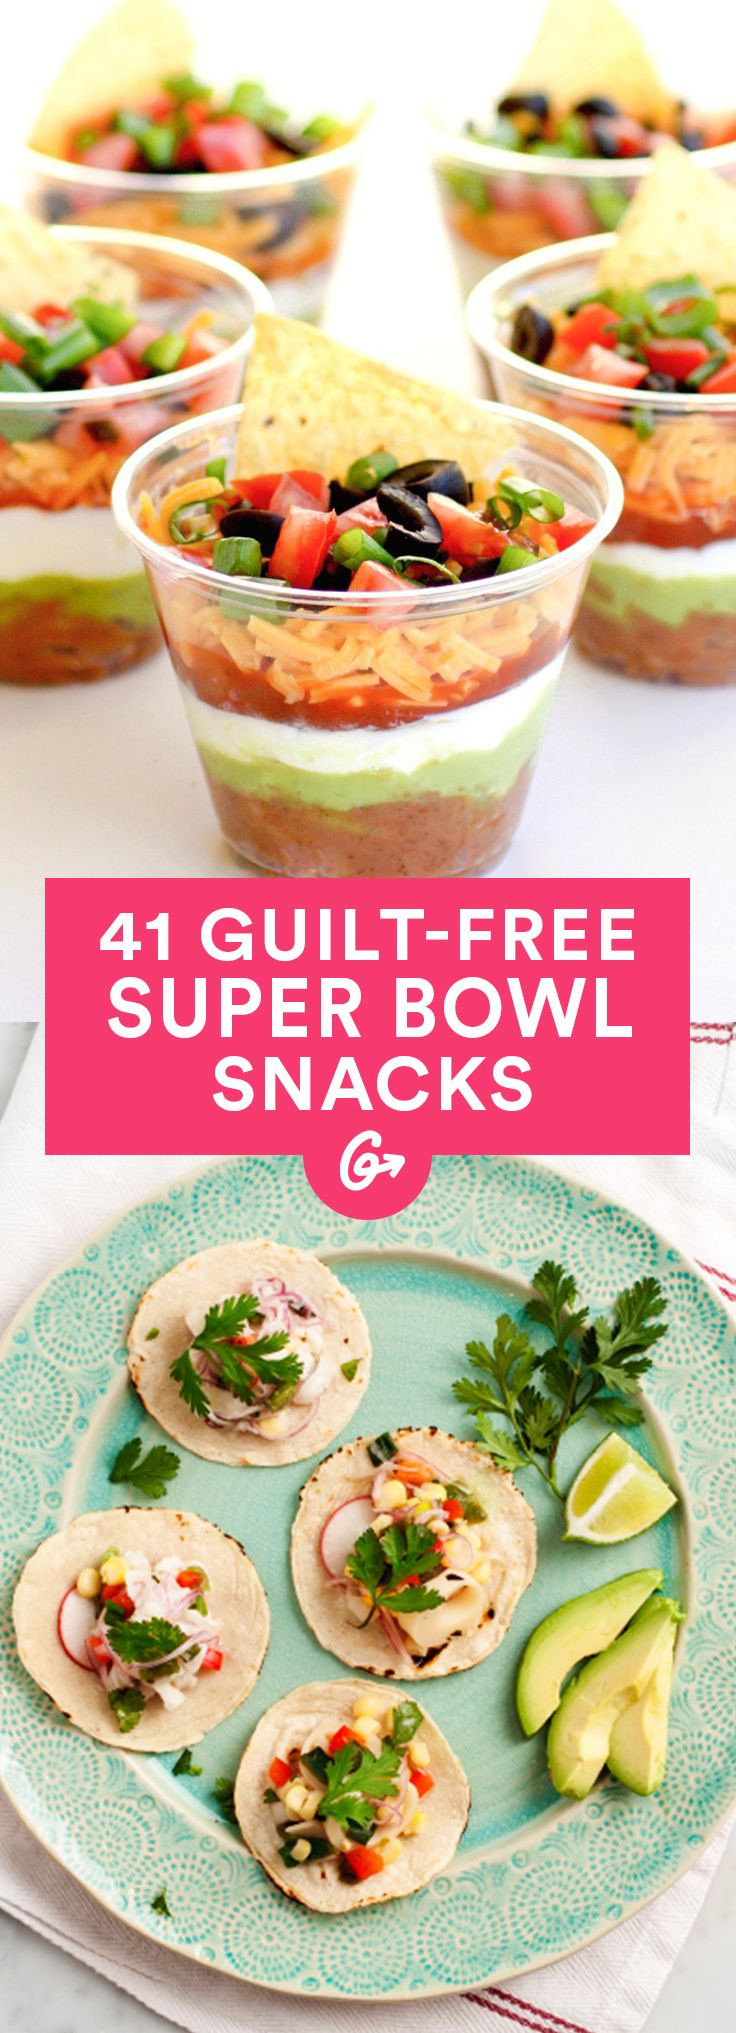 Super Bowl Recipes Healthy
 32 Healthy Super Bowl Snacks